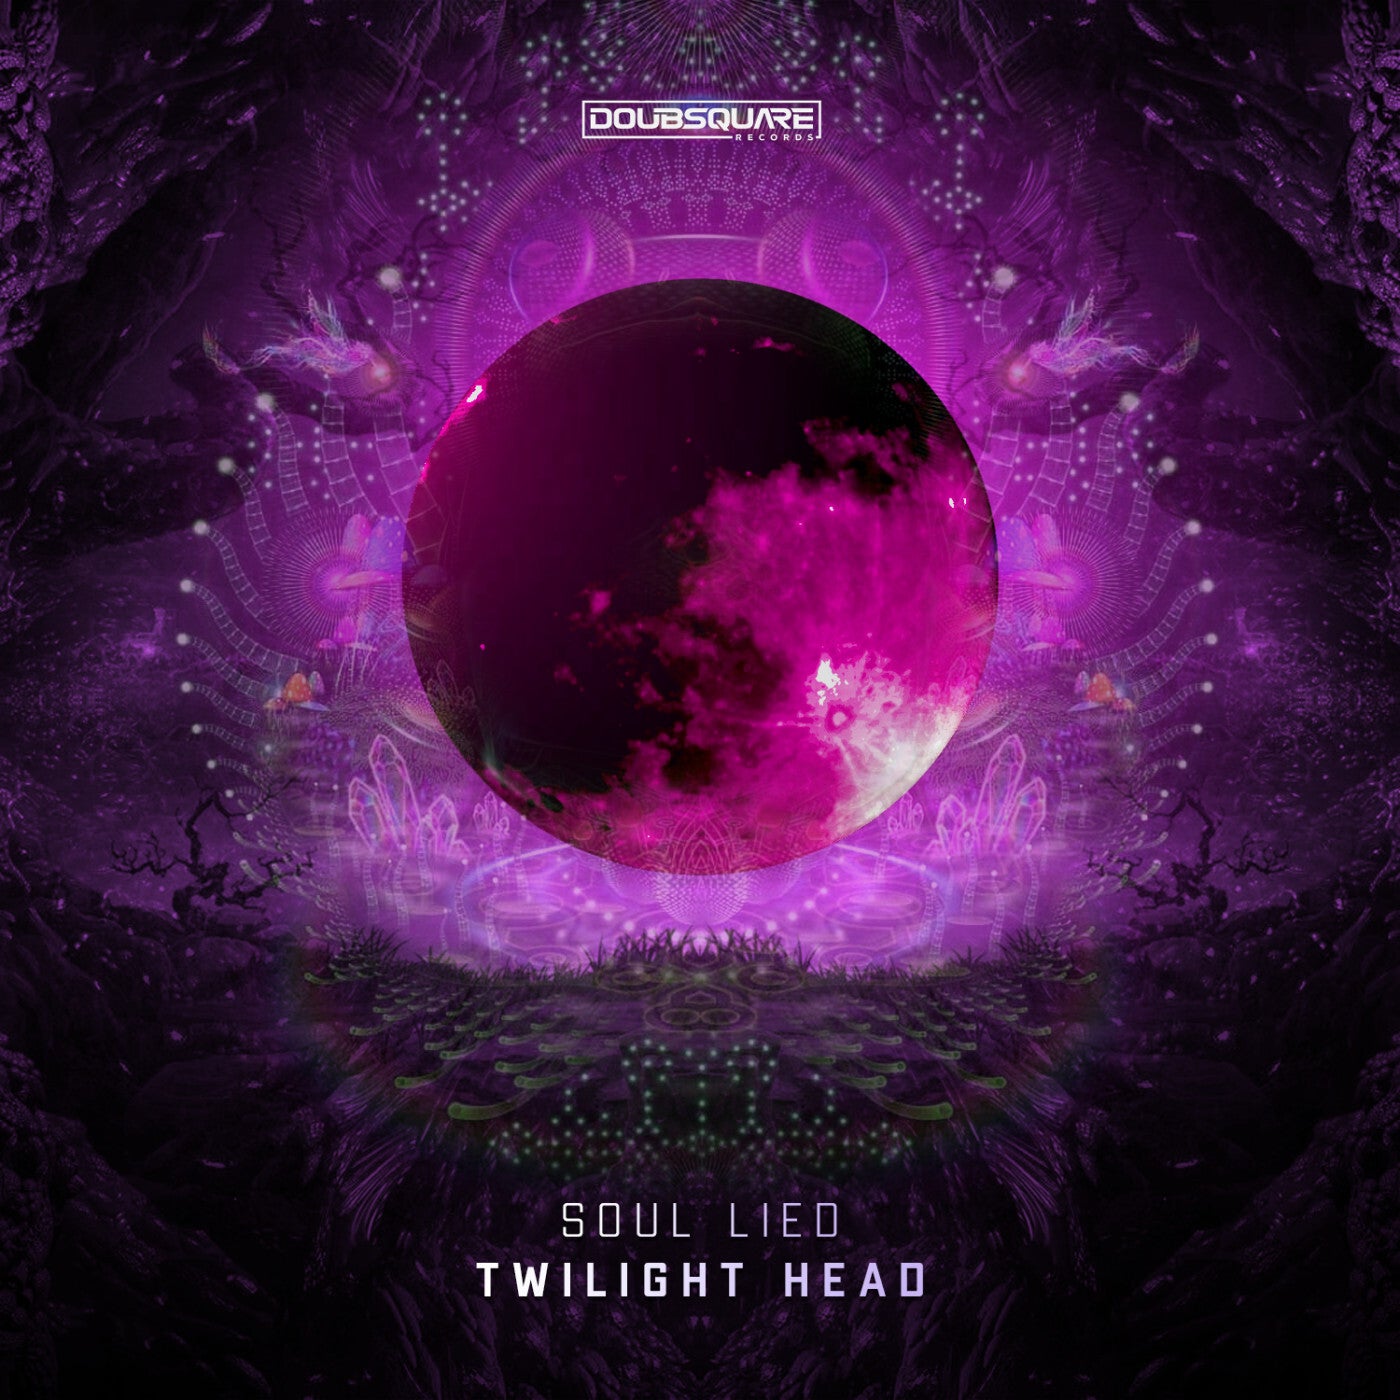 Twilight Head